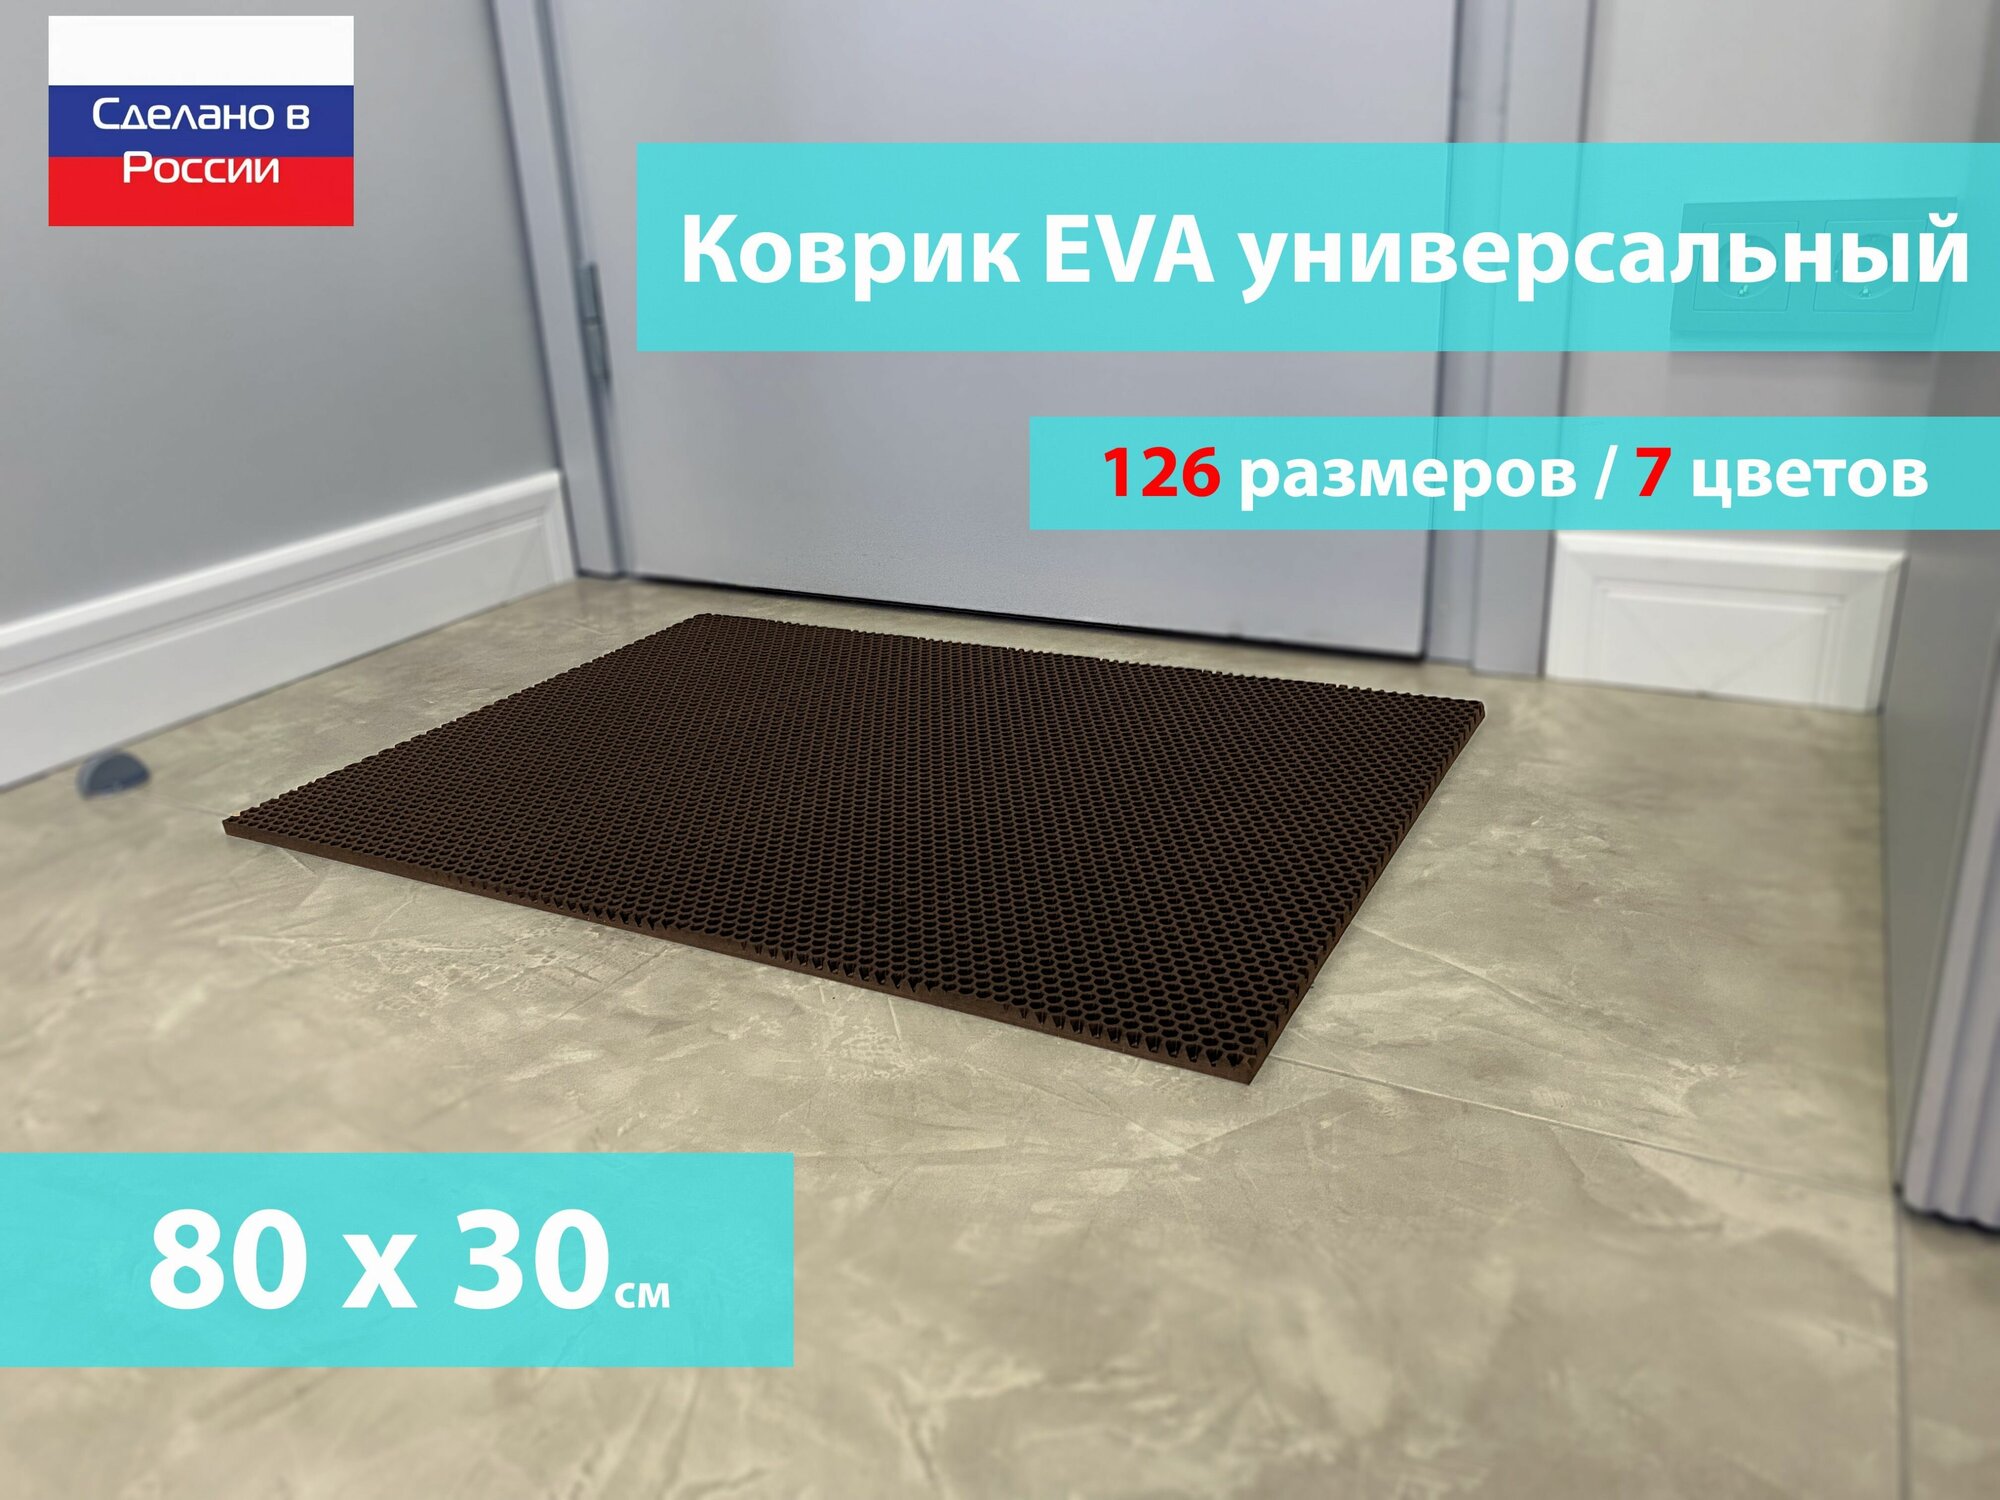 Коврик придверный EVA (ЕВА) в прихожую для обуви / Ковер ЭВА на пол перед дверью/ коричневый / размер 80 х 30 см - фотография № 1